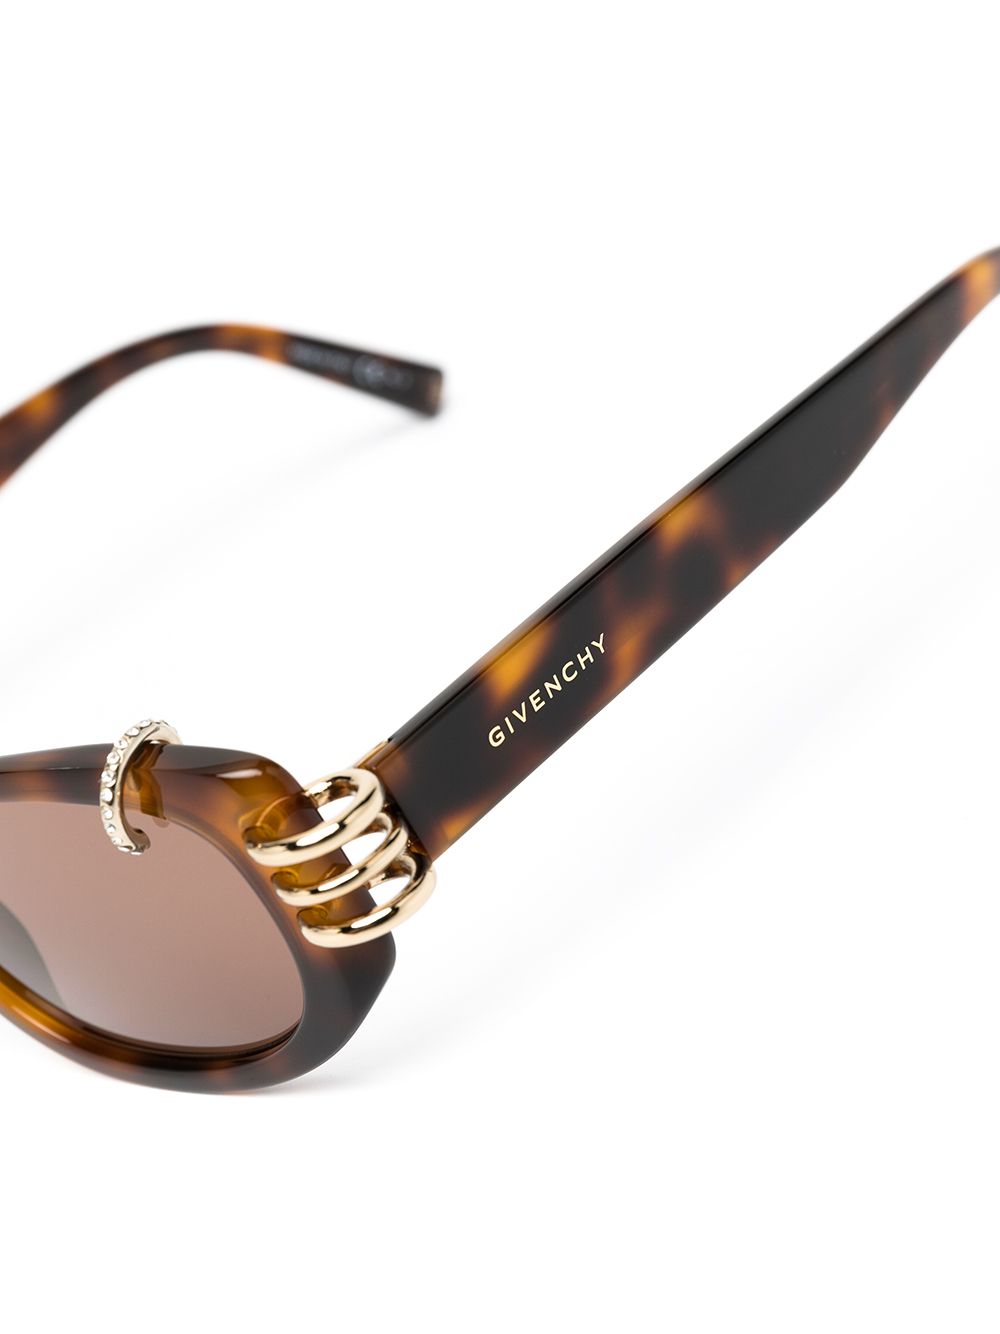 фото Givenchy eyewear солнцезащитные очки в квадратной оправе черепаховой расцветки